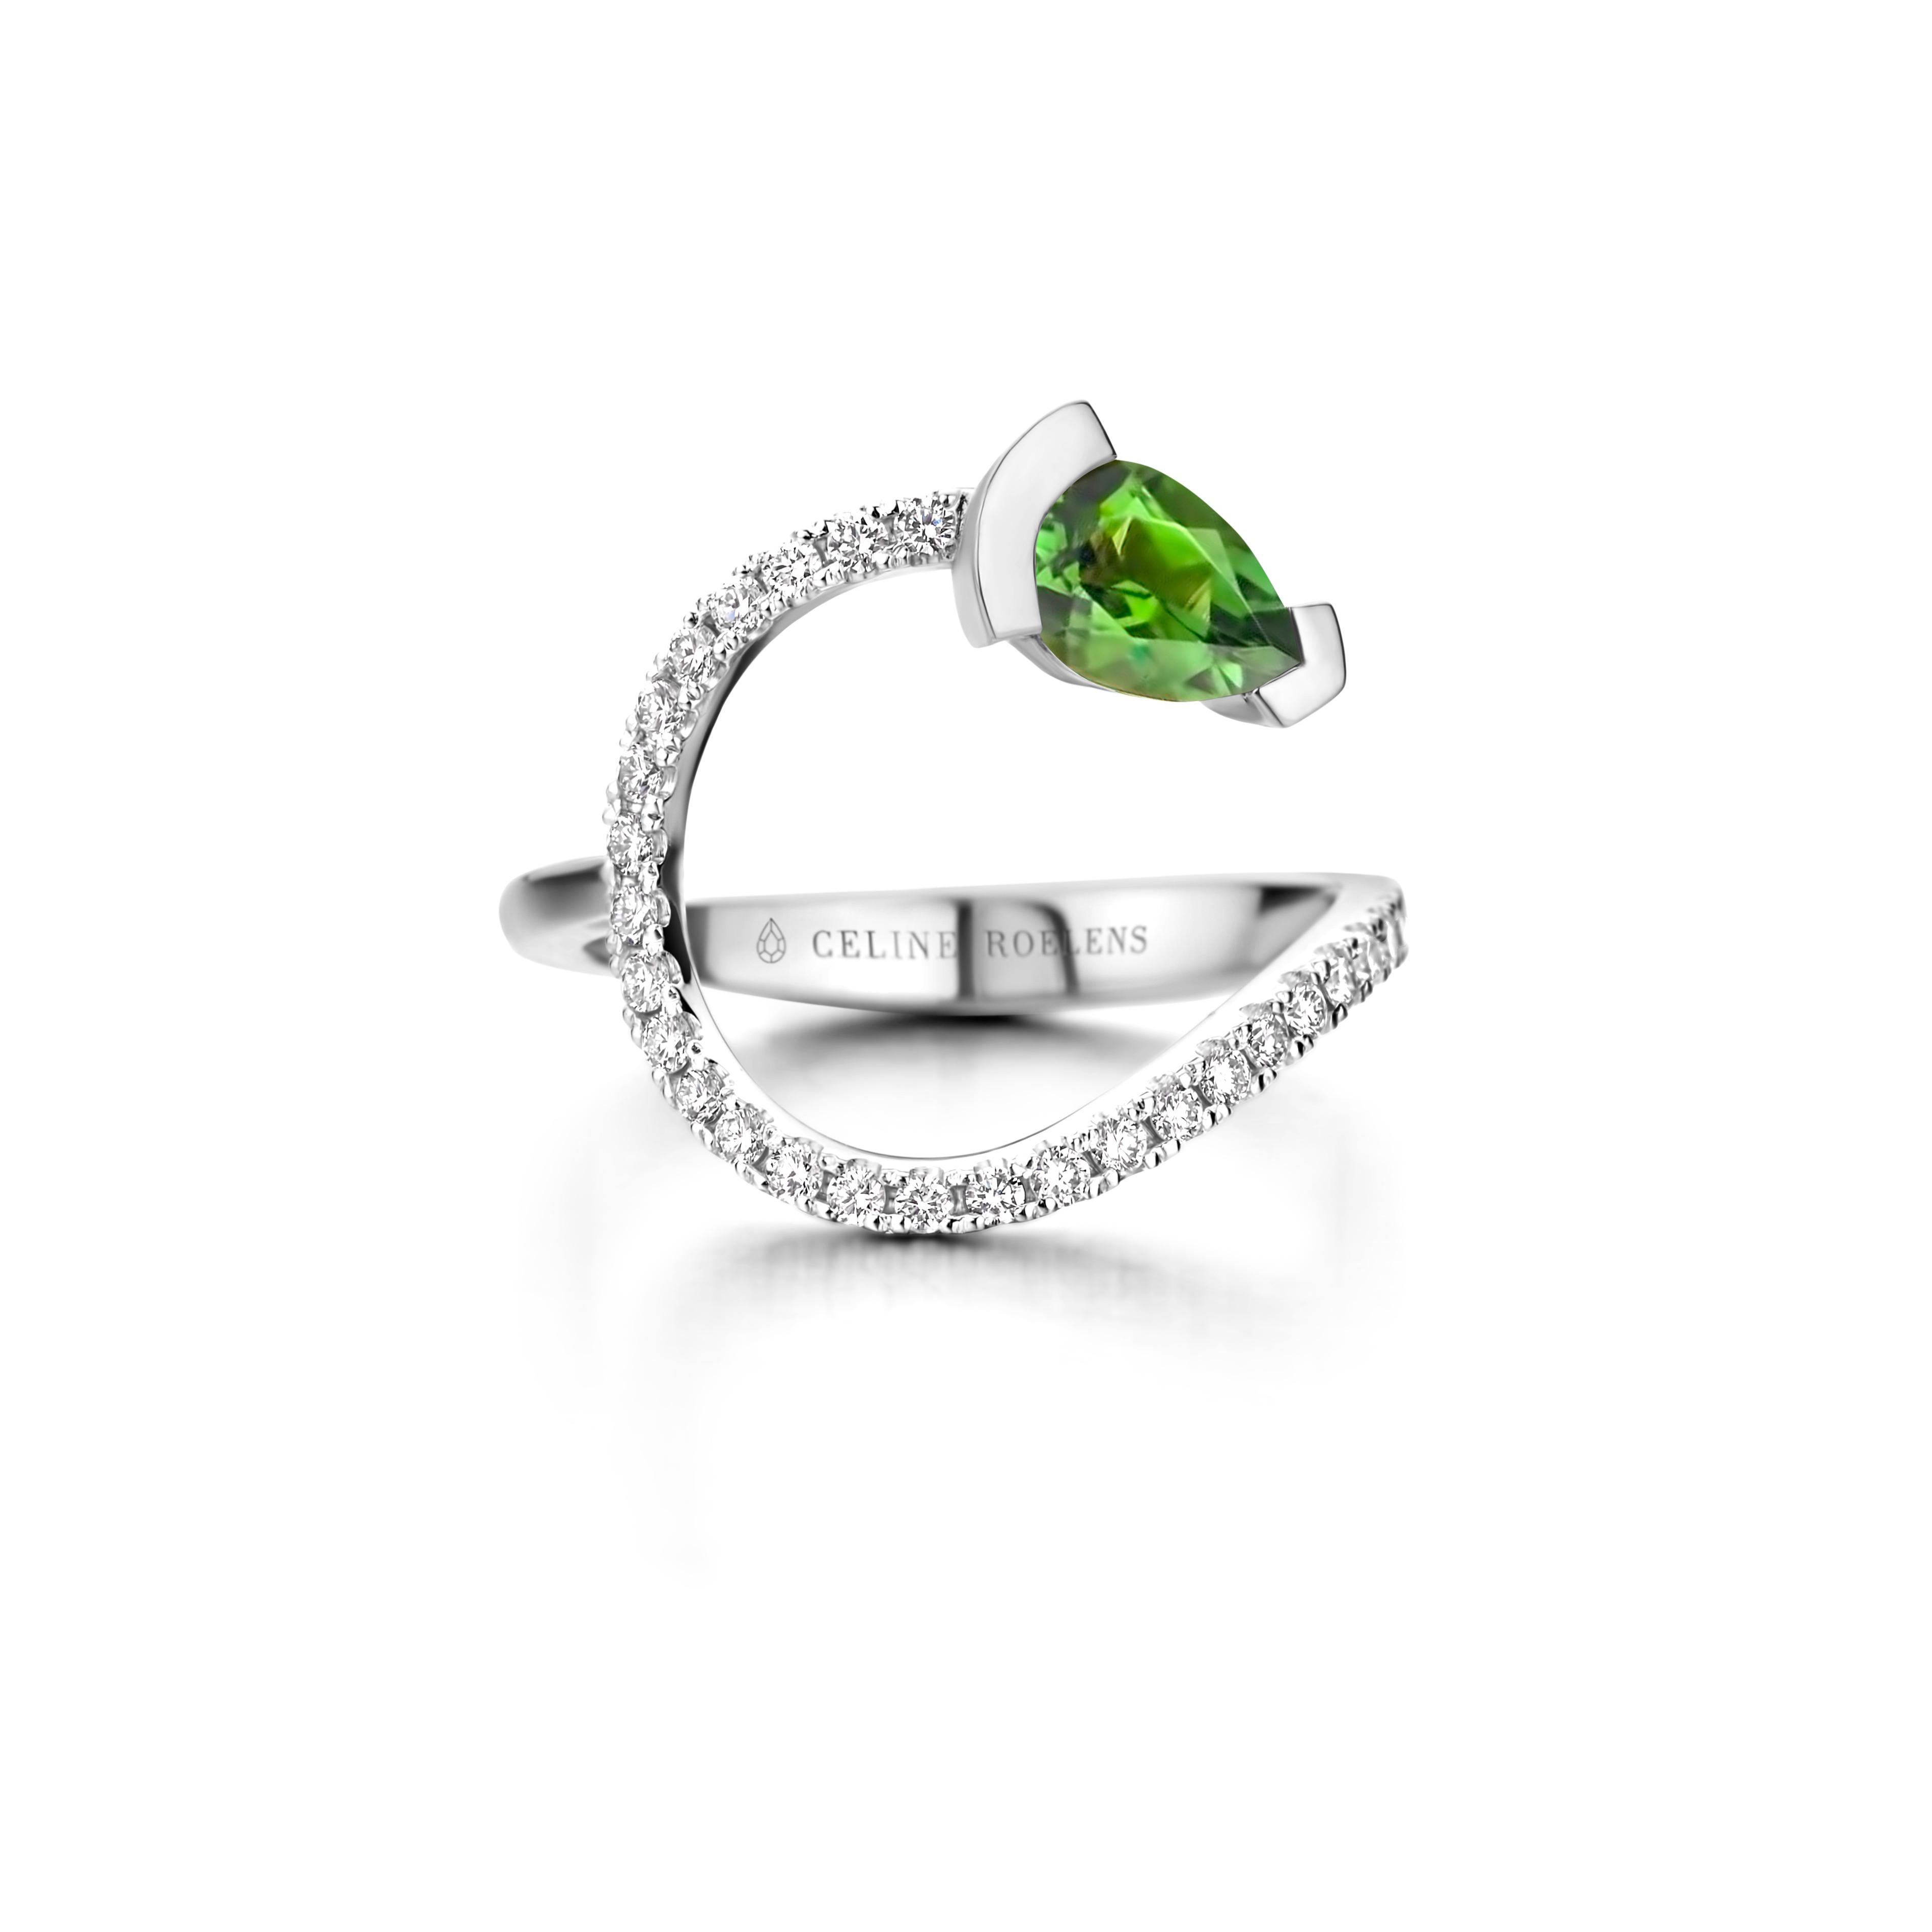 Gebogener Ring ADELINE aus 18 Kt Roségold, besetzt mit einem birnenförmigen grünen Turmalin und 0,33 Karat Diamanten mit weißem Brillantschliff - Qualität VS F.